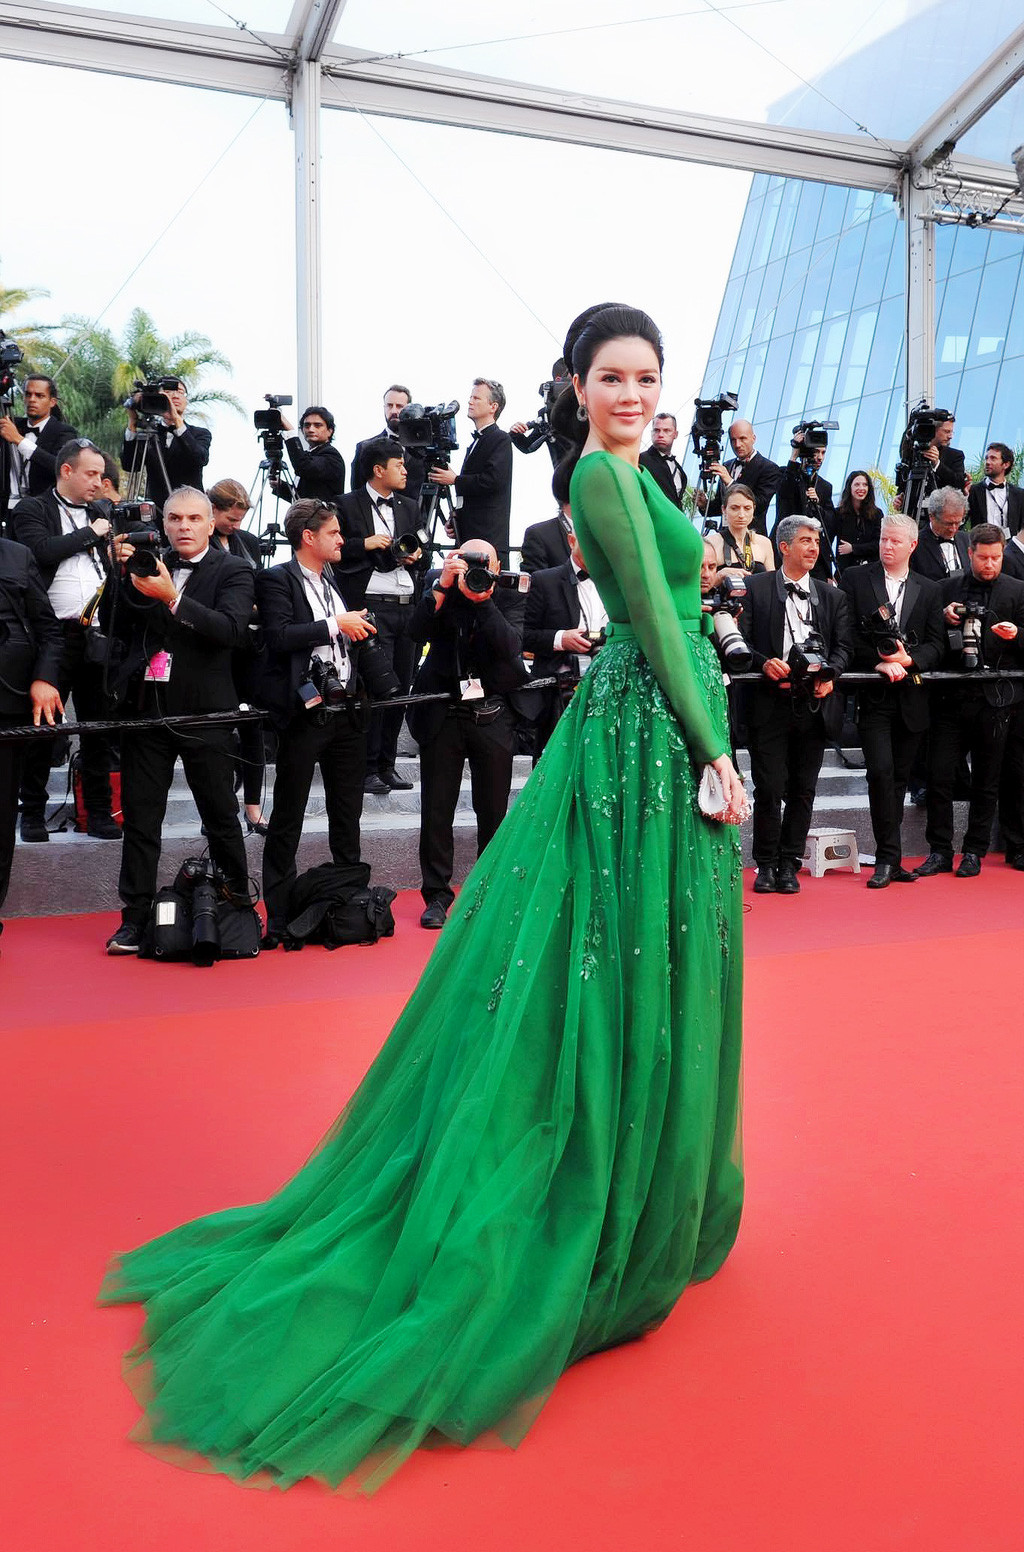 Những khoảnh khắc đẹp như mộng của Lý Nhã Kỳ với đầm xanh được nhiếp ảnh gia quốc tế ghi lại trên thảm đỏ Cannes 15